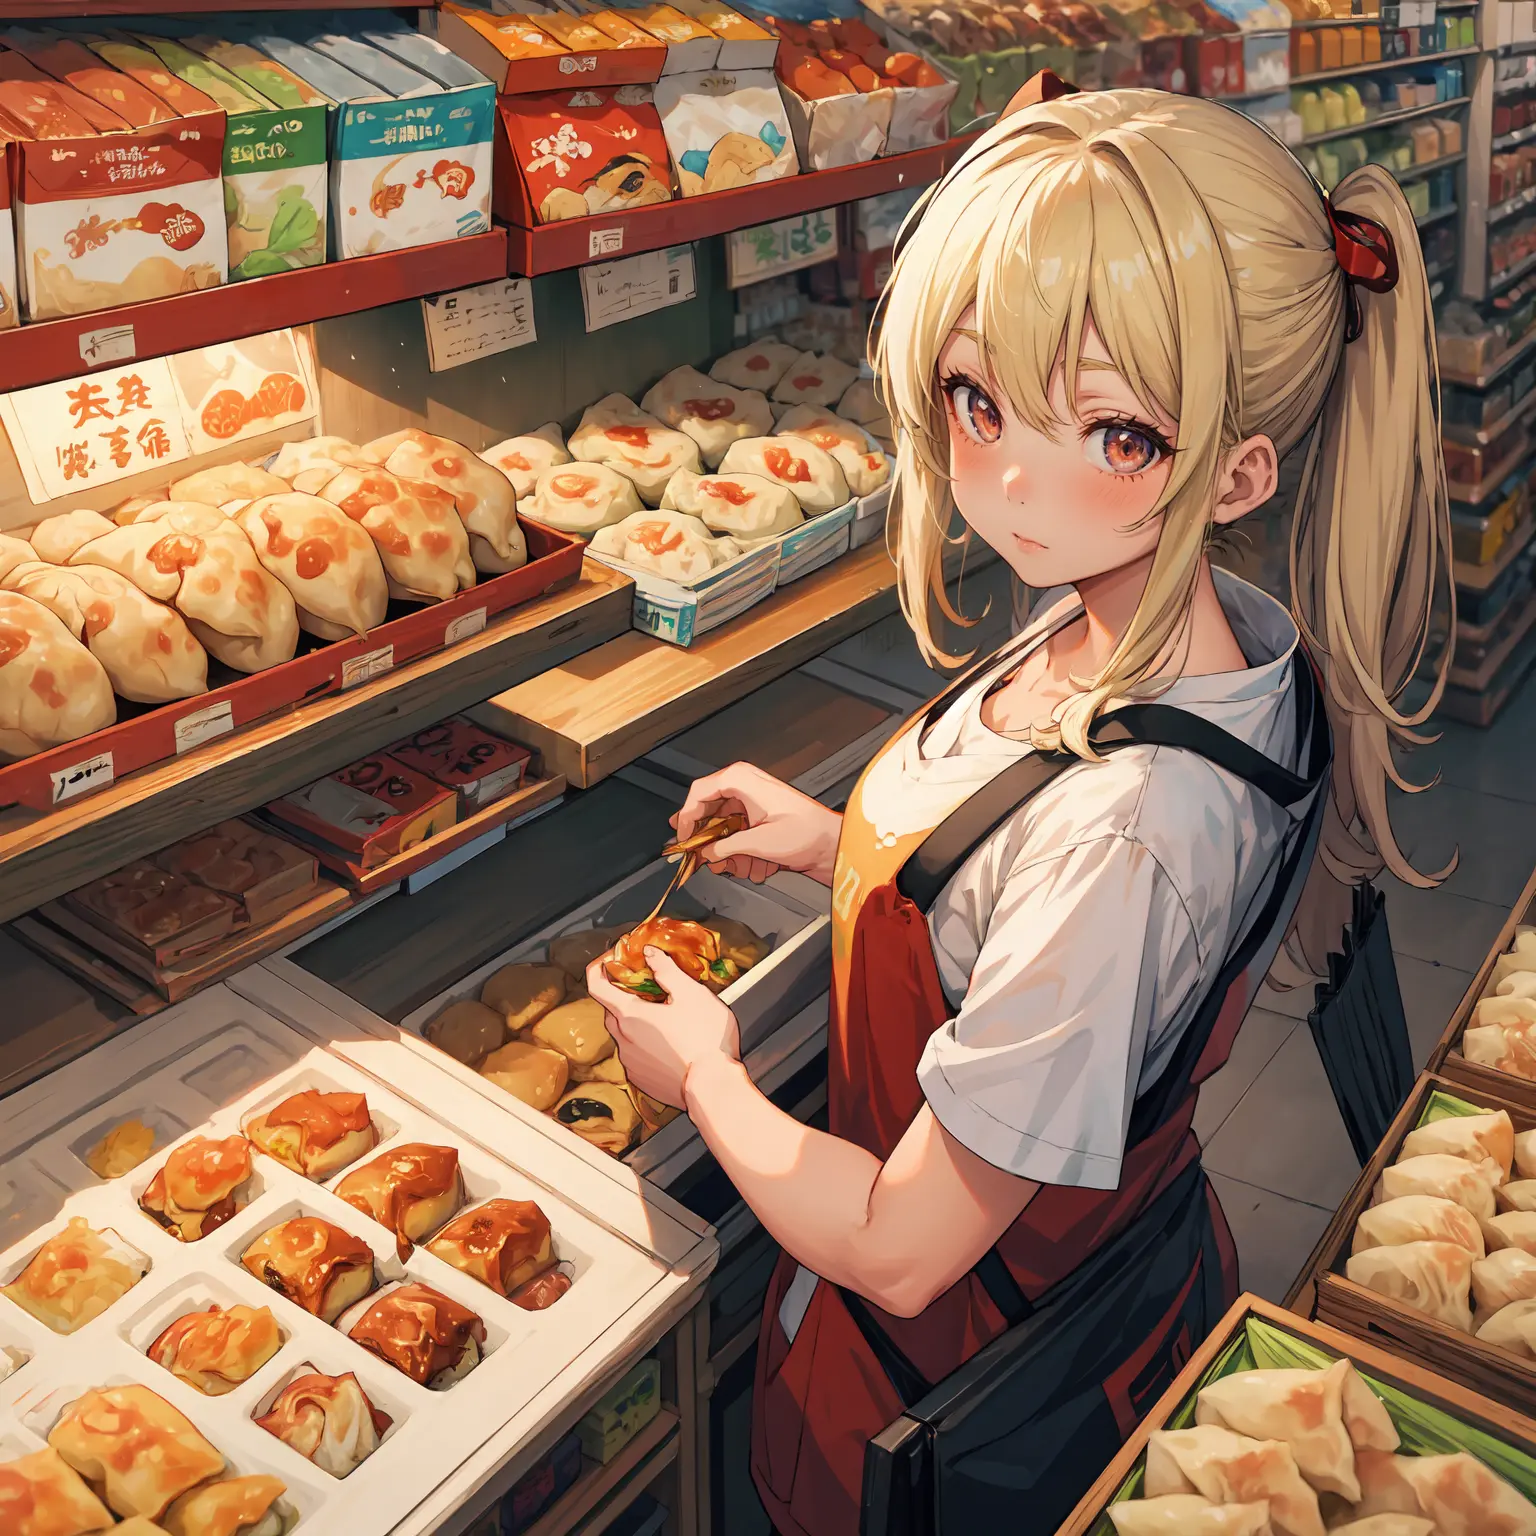 (Лучшее качество:1.4), аниме, Один, Девушка в супермаркете гёдза пельмени цзяоцзы